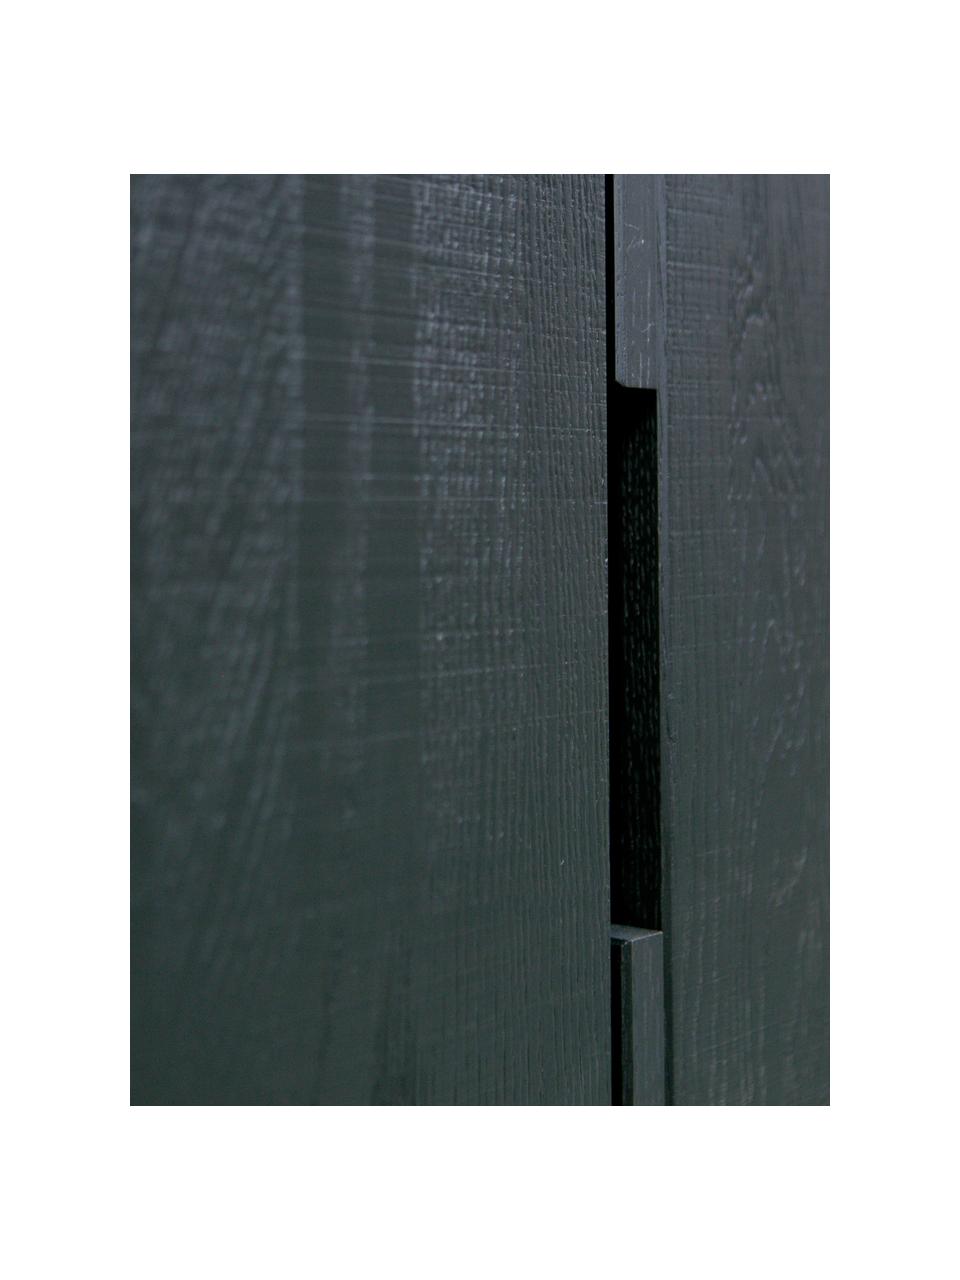 Highboard Silas aus Holz, Korpus: Eichenholz, gebürstet und, Füße: Metall, lackiert, Schwarz, B 85 x H 149 cm